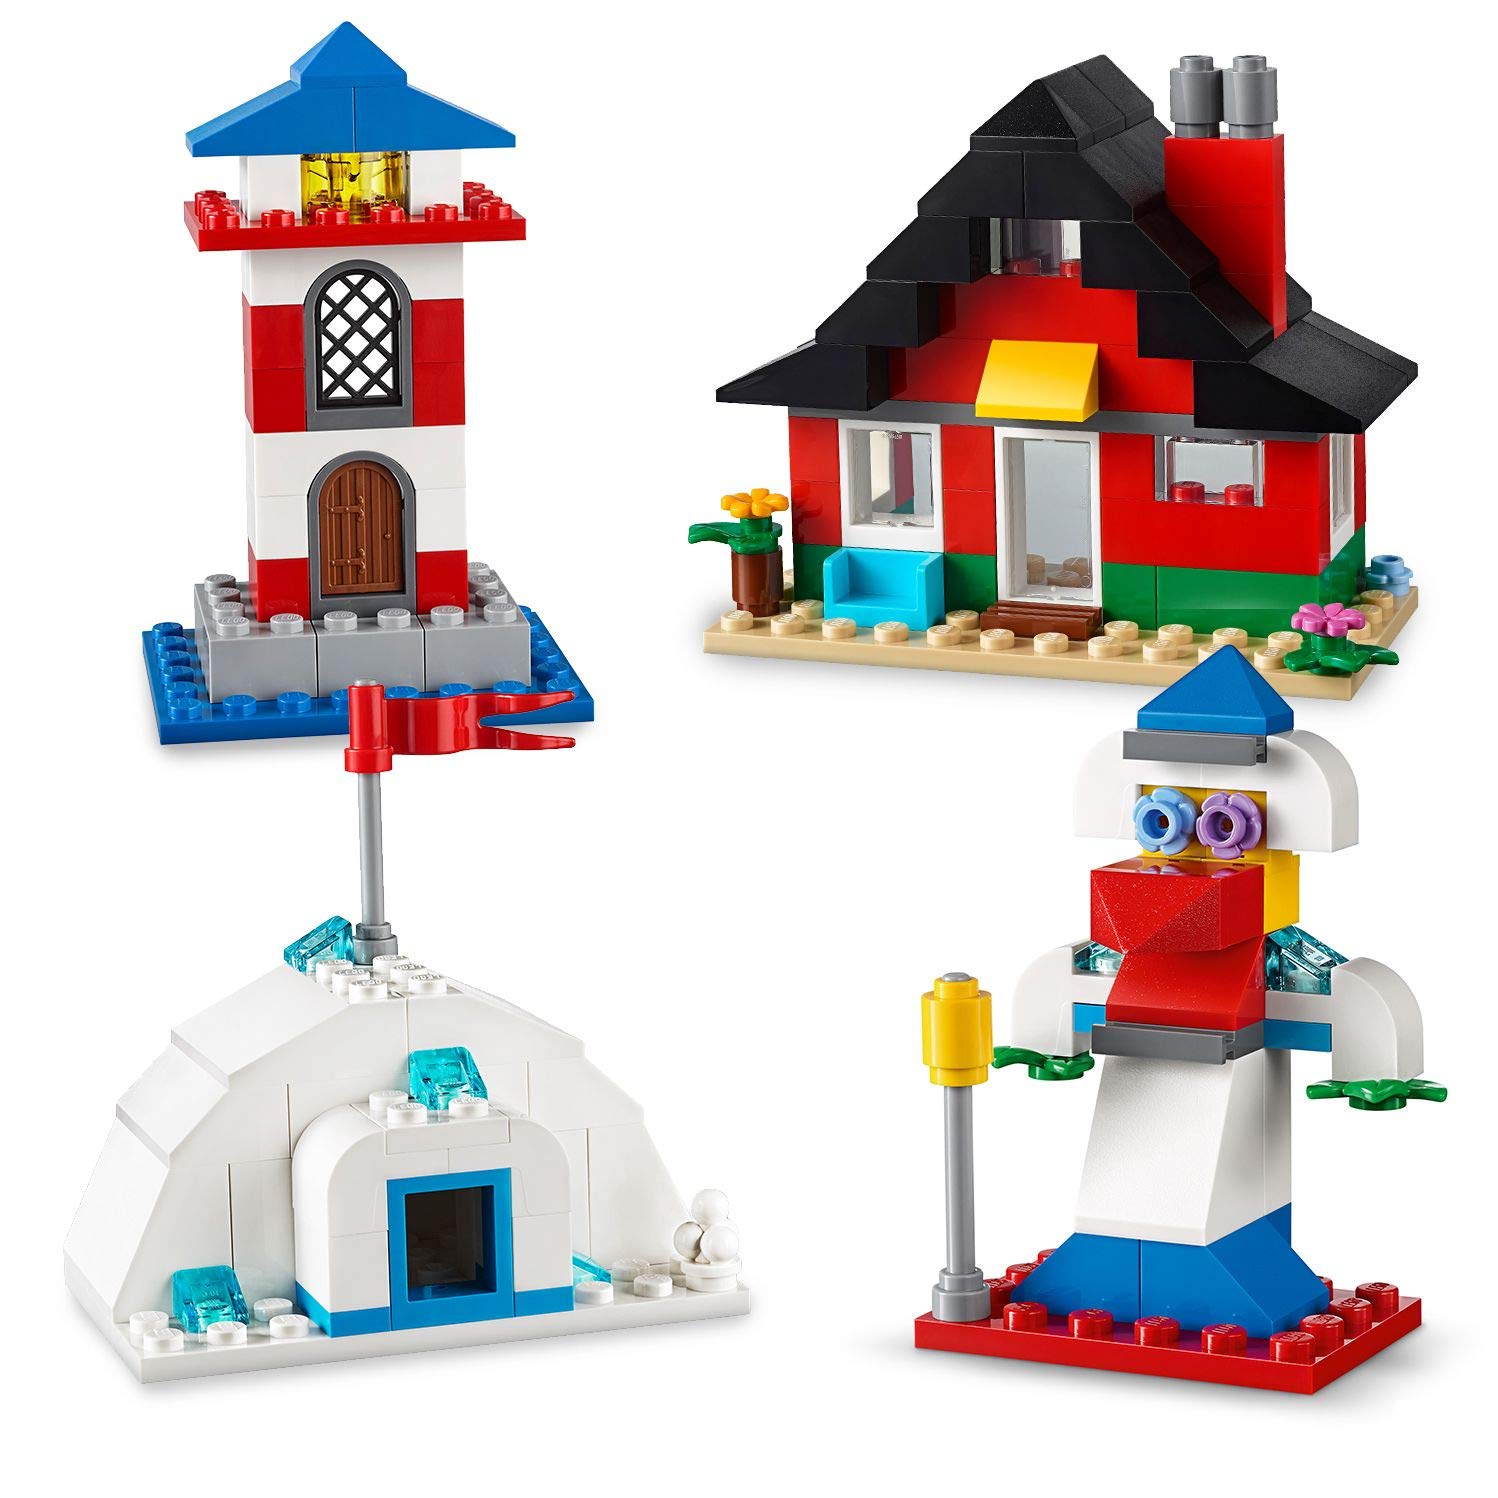 LEGO Classic - Blocos e Casas, 270 Peças - 11008